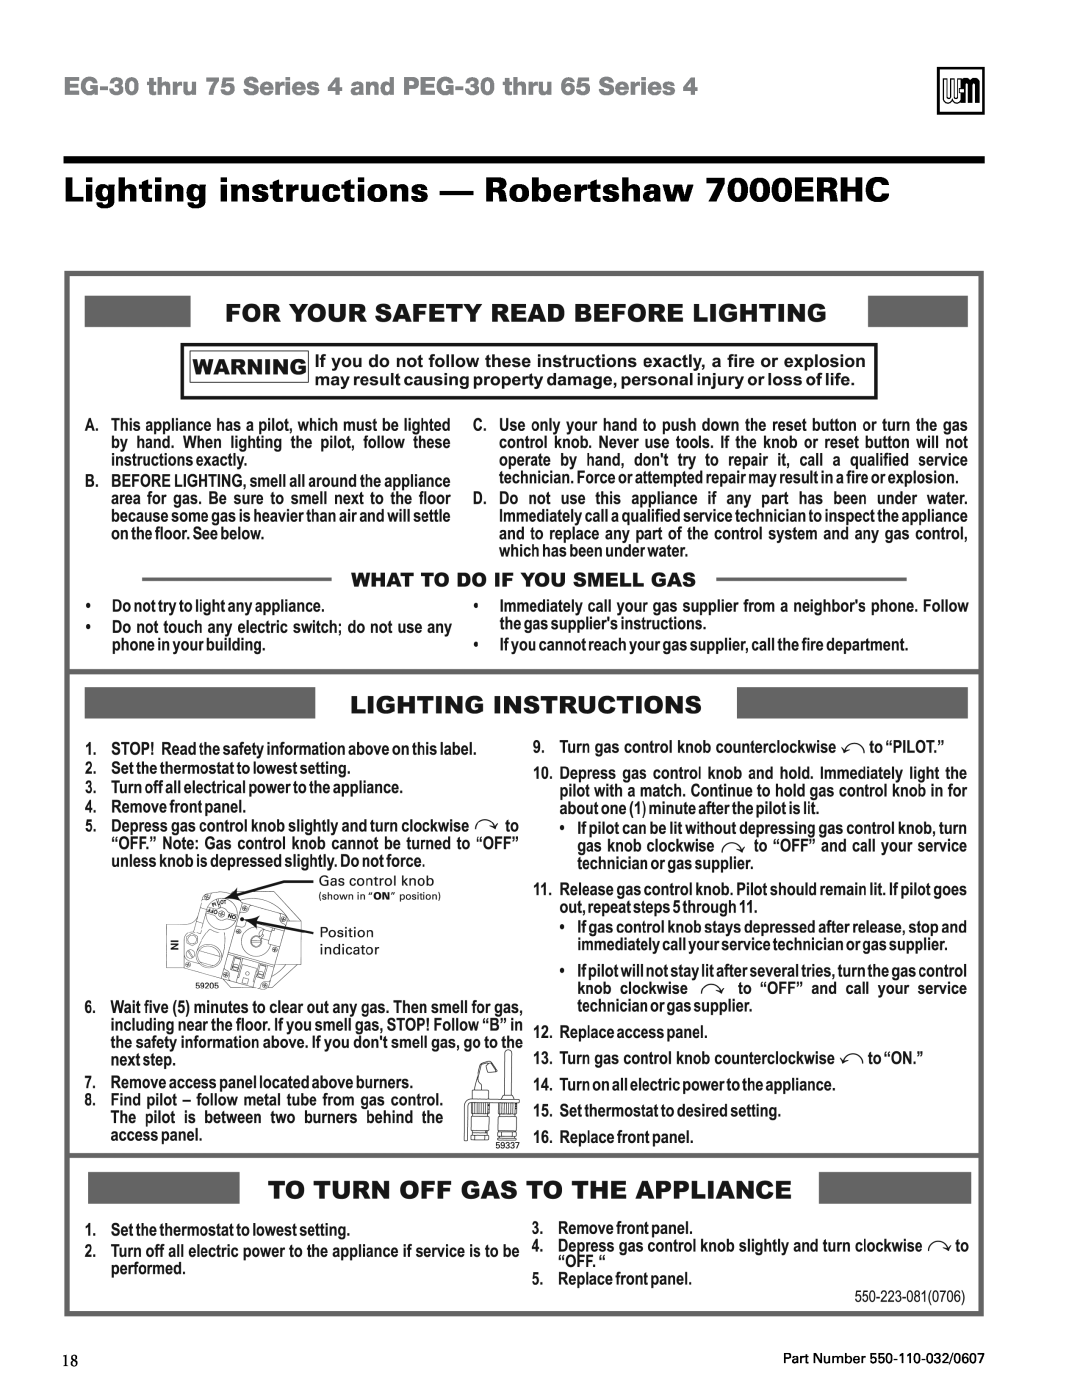 Weil-McLain PEG-30 THRU -65 Lighting instructions - Robertshaw 7000ERHC, EG-30thru 75 Series 4 and PEG-30thru 65 Series 